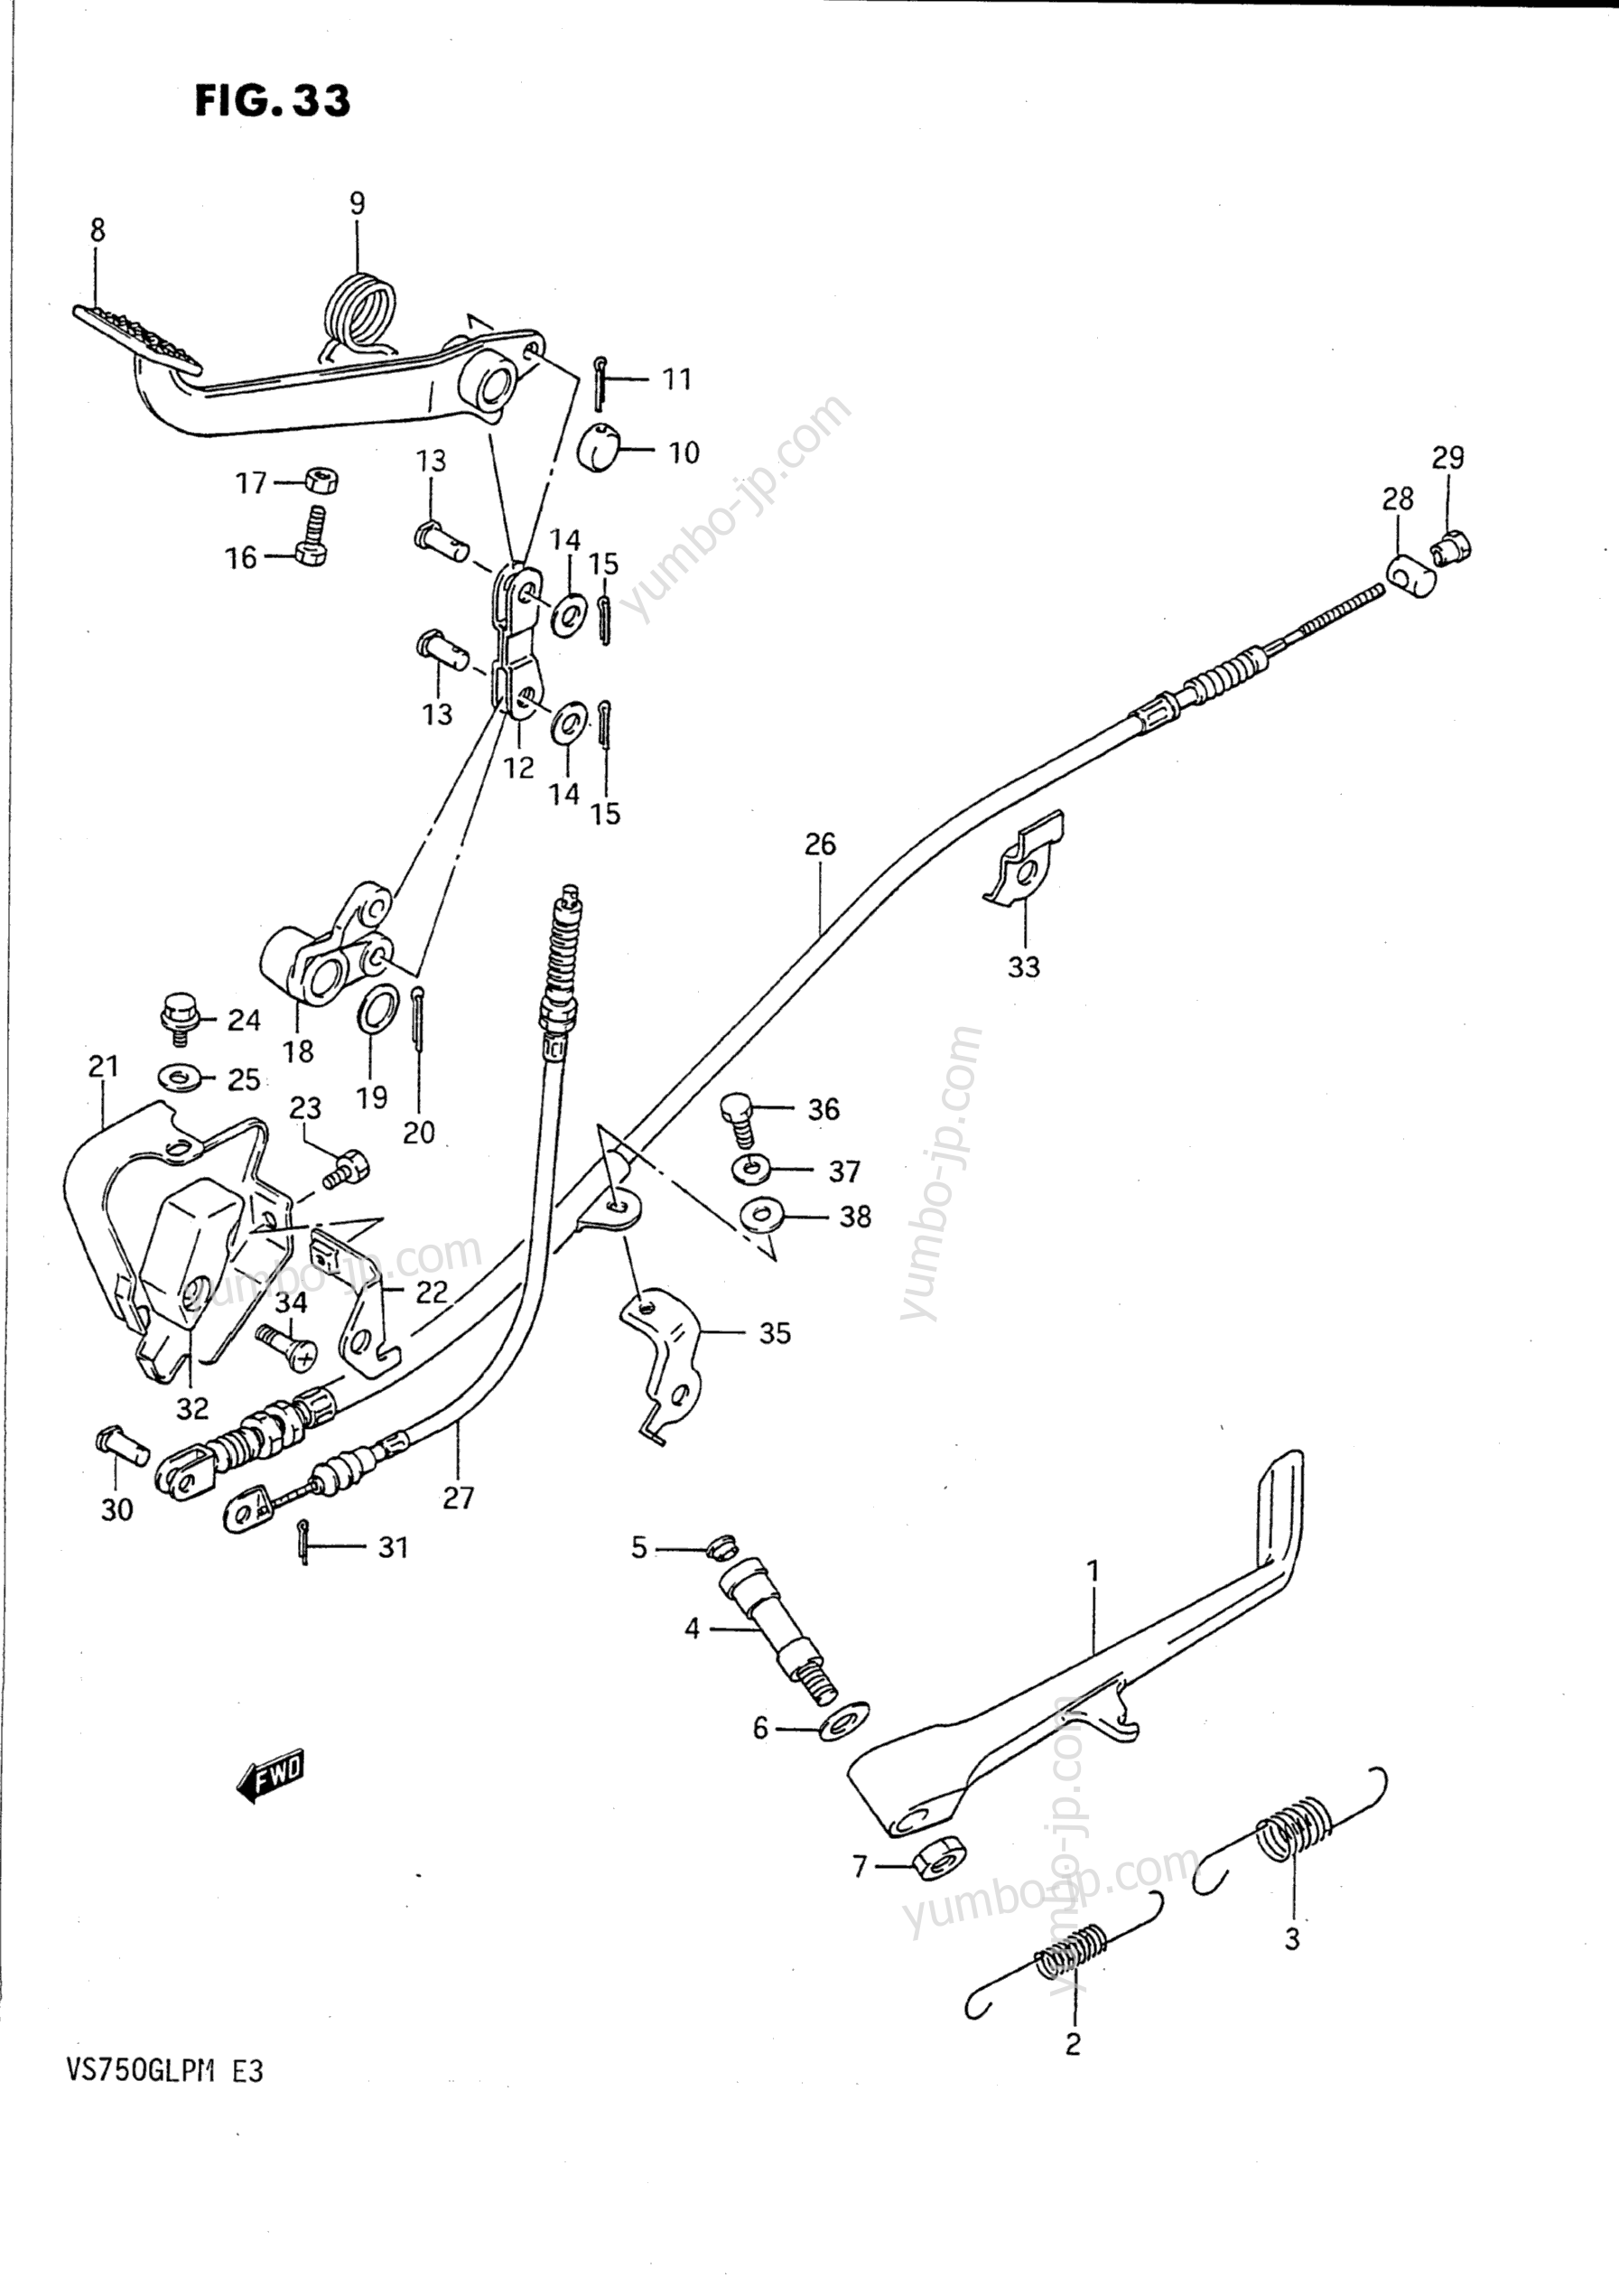 PROP STAND - REAR BRAKE for motorcycles SUZUKI Intruder (VS750GLP) 1991 year